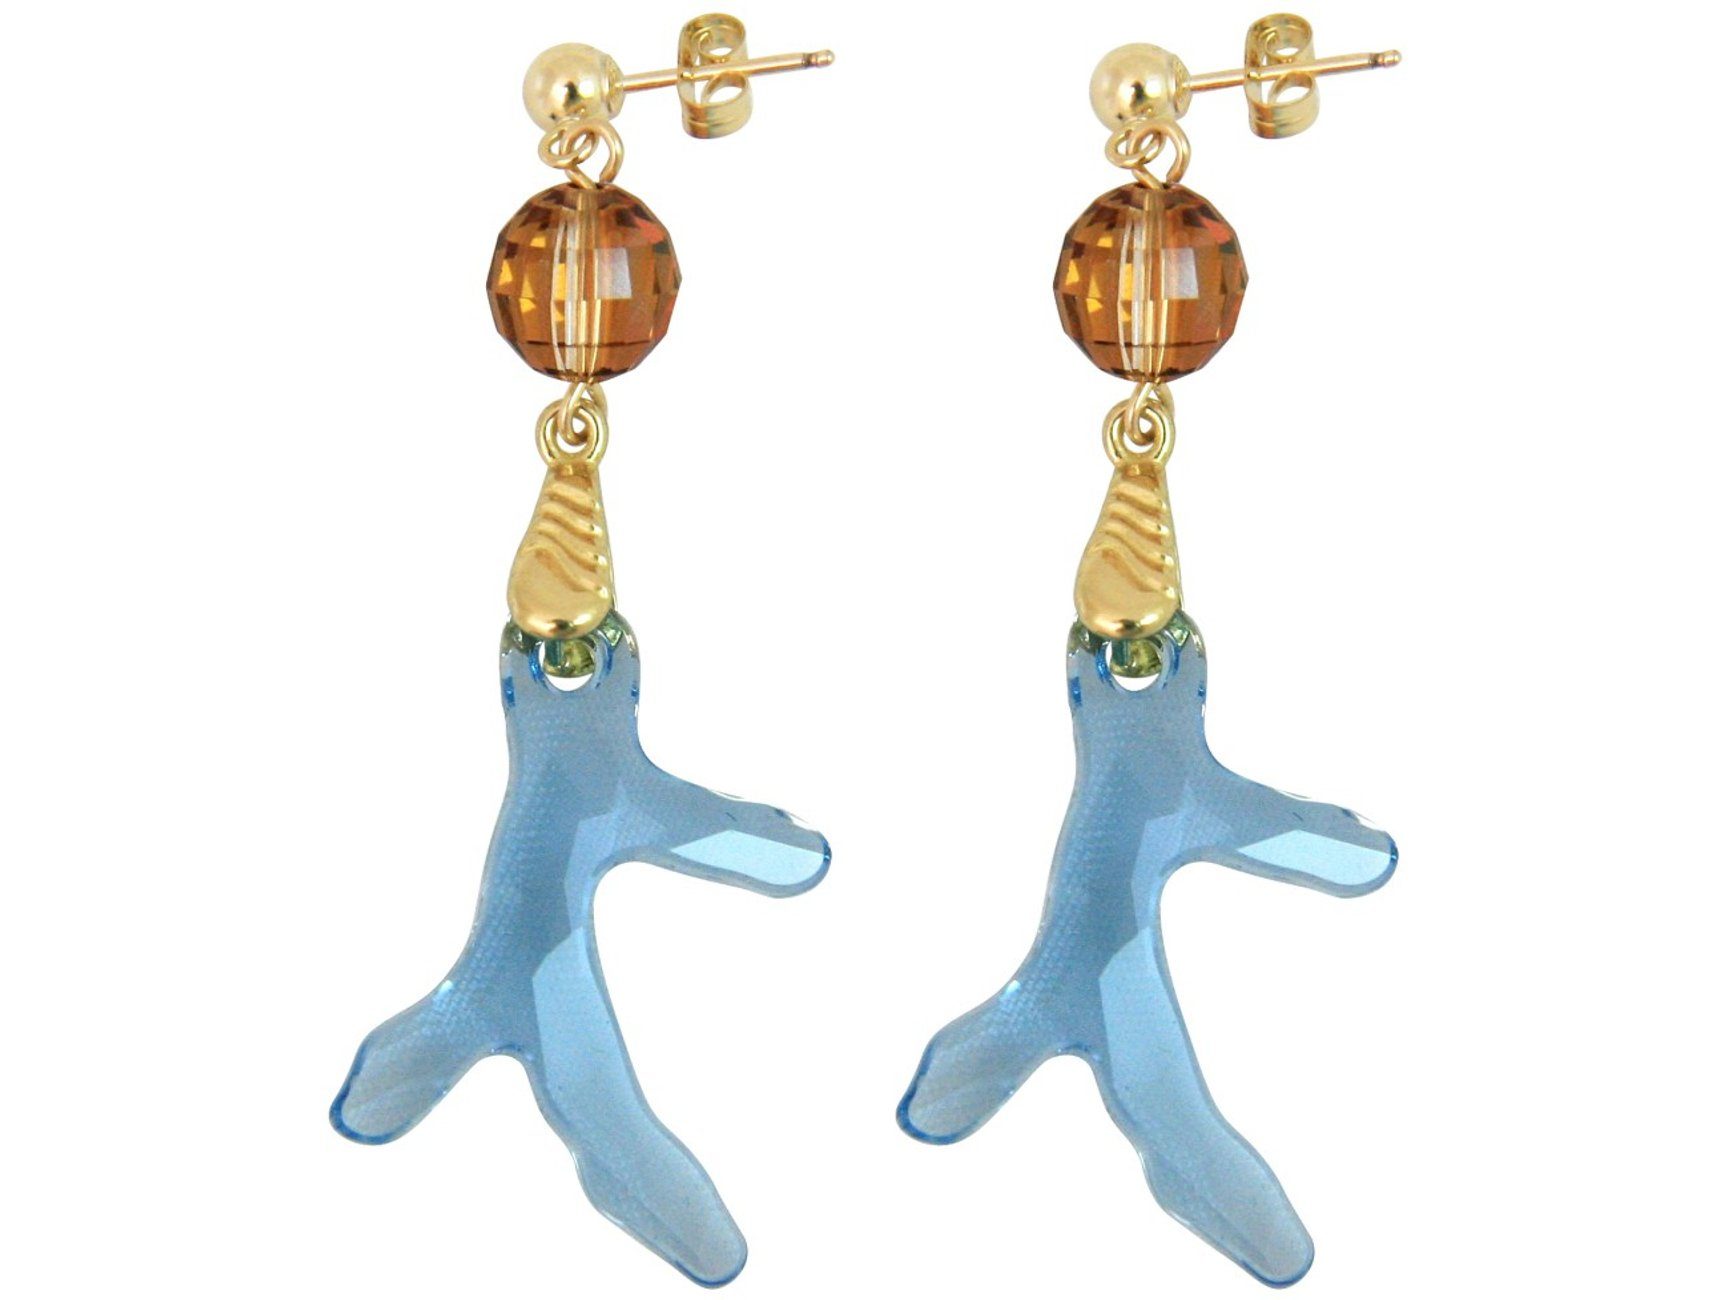 Damen Schmuck Gemshine Paar Ohrhänger Koralle Meeresblau, Manufaktur mit Ethik